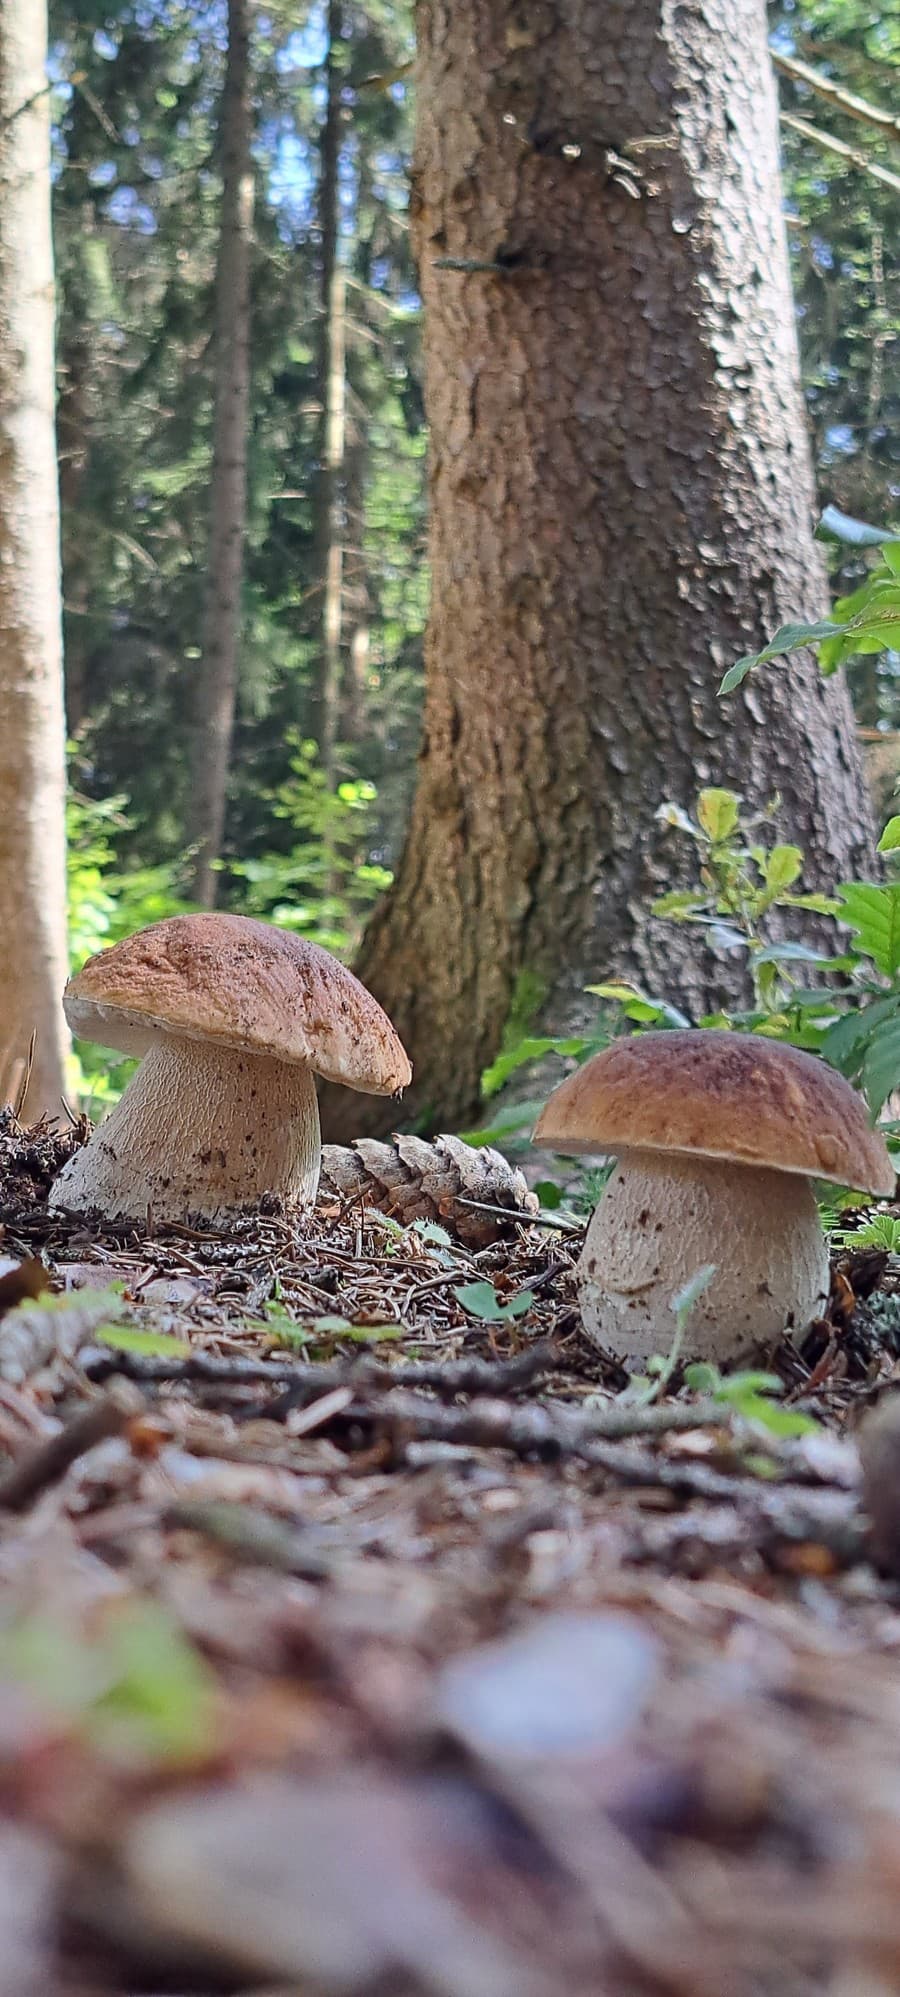 Turistke Jane sa v lese pri Považskej Bystrici podarilo odfotiť takéto krásne dubáky.